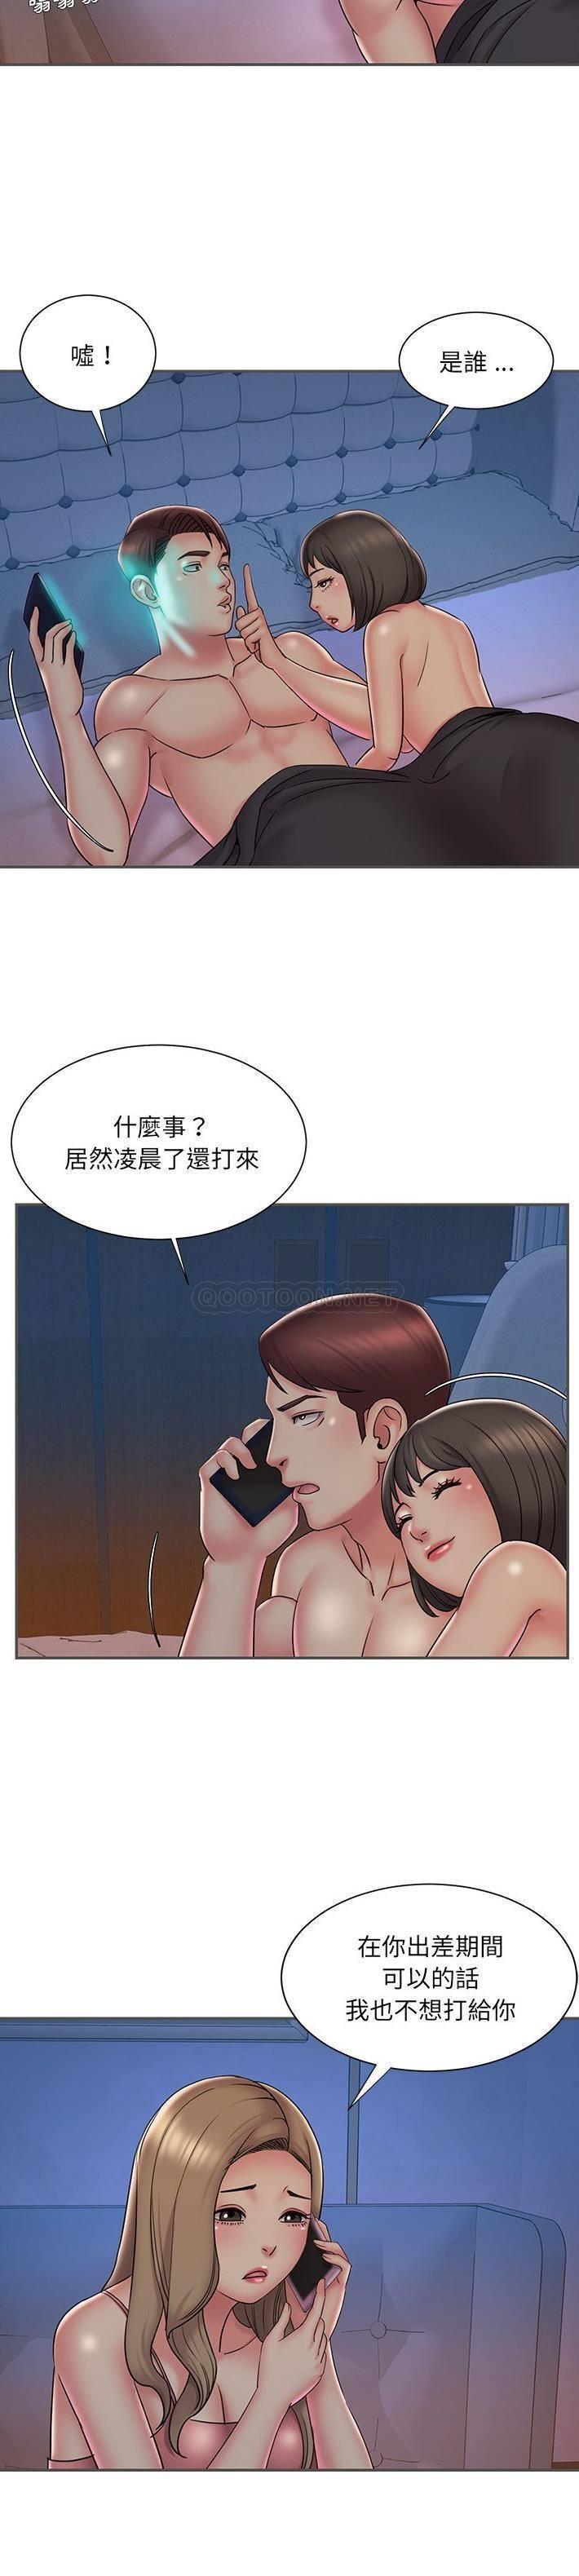 韩国污漫画 被拋棄的男人(男孩沒人愛) 第35话 6